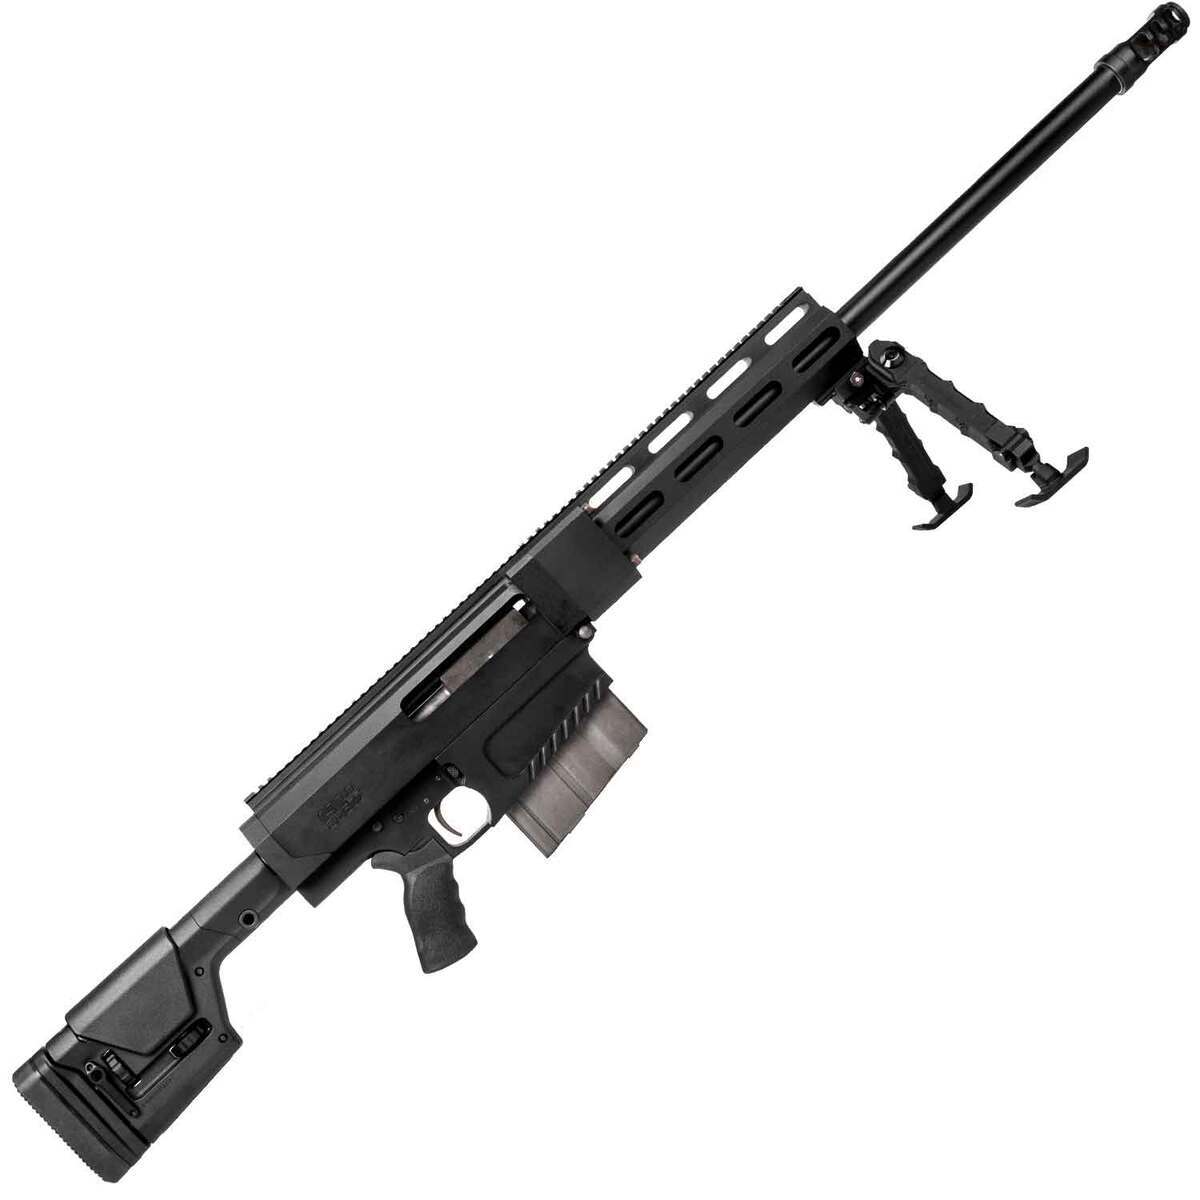 https://www.sportsmans.com/medias/hm-defense-hm50b-black-cerakote-bolt-action-rifle-50-bmg-2925in-1821768-1.jpg?context=bWFzdGVyfGltYWdlc3w0NTcwN3xpbWFnZS9qcGVnfGFHVm1MMmd4TVM4eE1UVTFPVGcyTXpnM056WTJNaTh4TWpBd0xXTnZiblpsY25OcGIyNUdiM0p0WVhSZlltRnpaUzFqYjI1MlpYSnphVzl1Um05eWJXRjBYM050ZHkweE9ESXhOelk0TFRFdWFuQm58ZWQyNzk2MTlmZGU1NzA2NGNkOWQxOGExNzUwYjE4YzZmYWRjYjBjM2Q4NTQwMjJhMWE5YWI2YzhkZDkzMmM0Nw